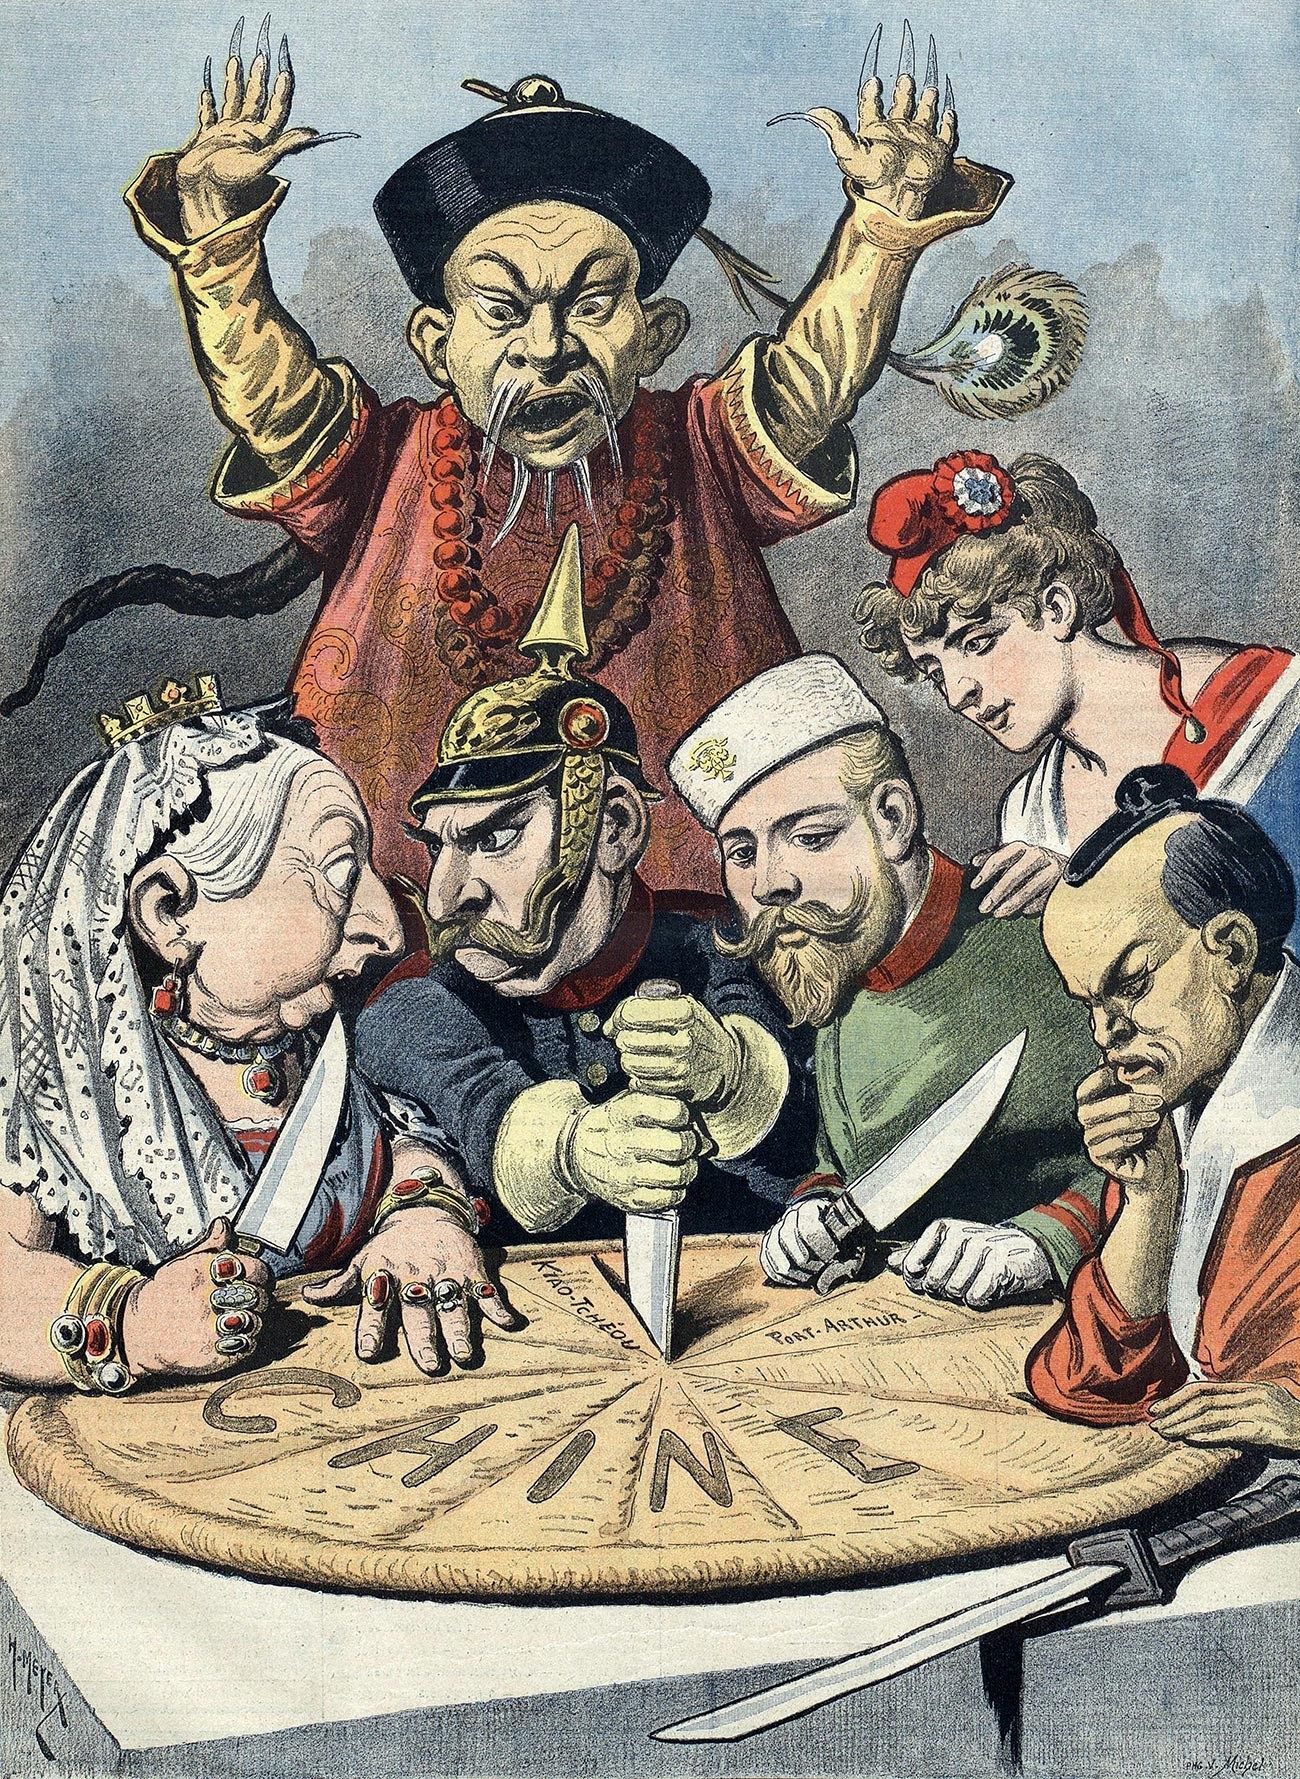  Caricatura política francesa do final dos anos 1890.